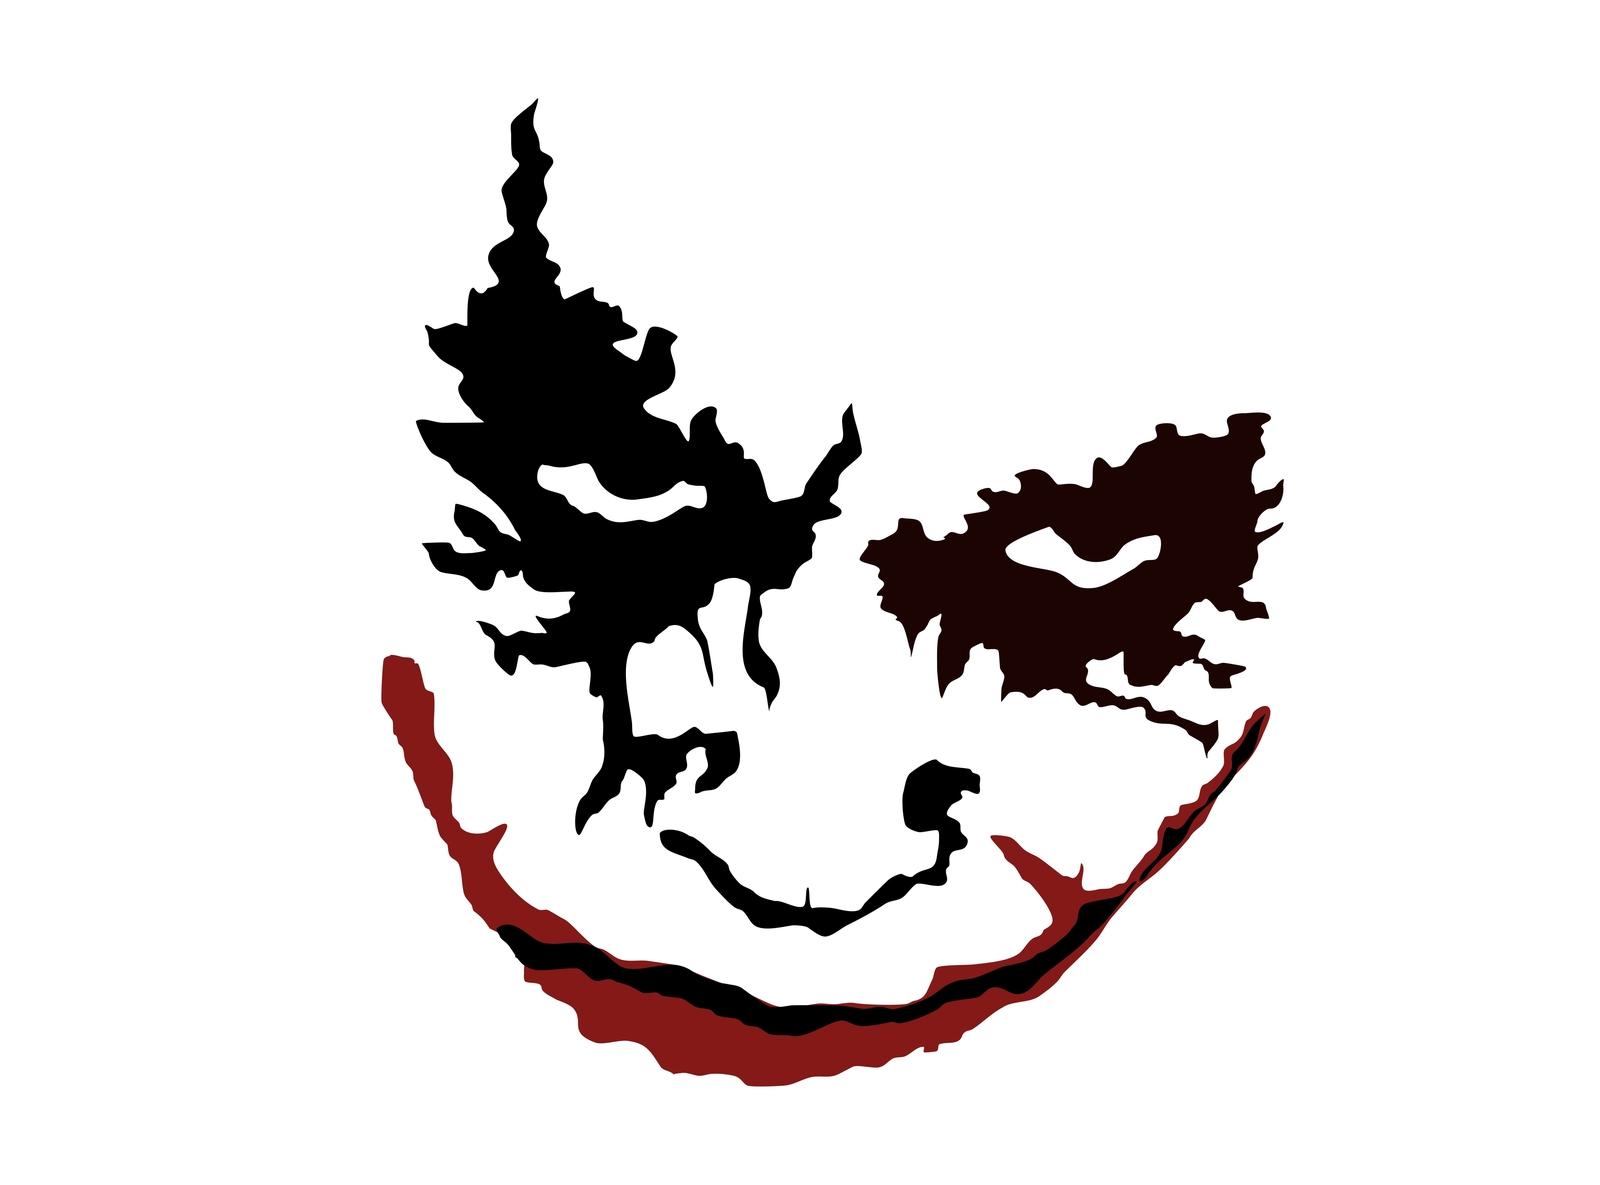 Joker by BraunDesign on Dribbble